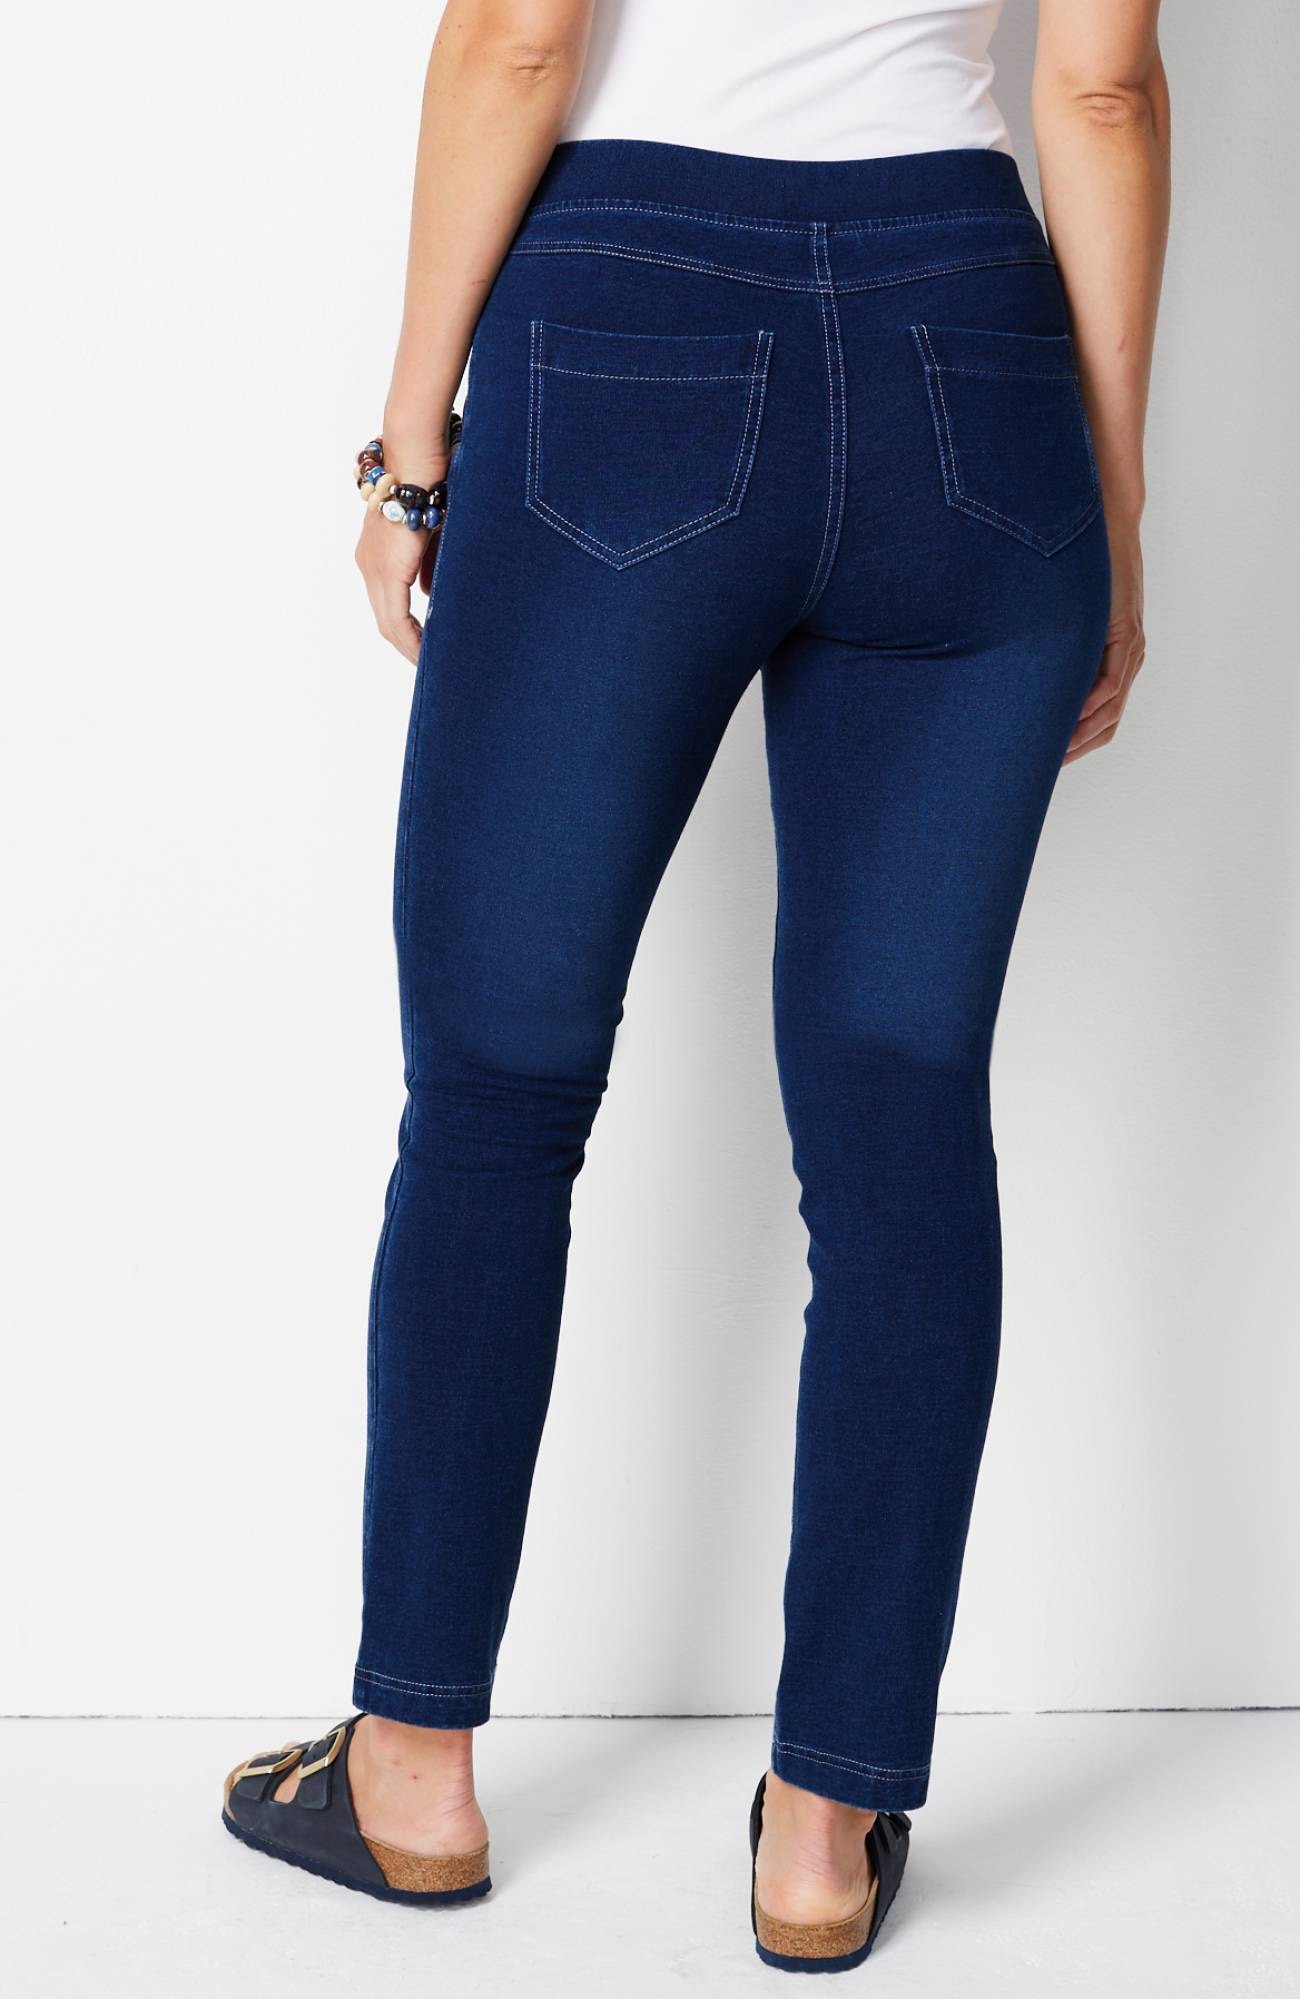 Pure Jill J Jill Indigo Slim Leg Knit Jeans XL Petite Pull On NWT